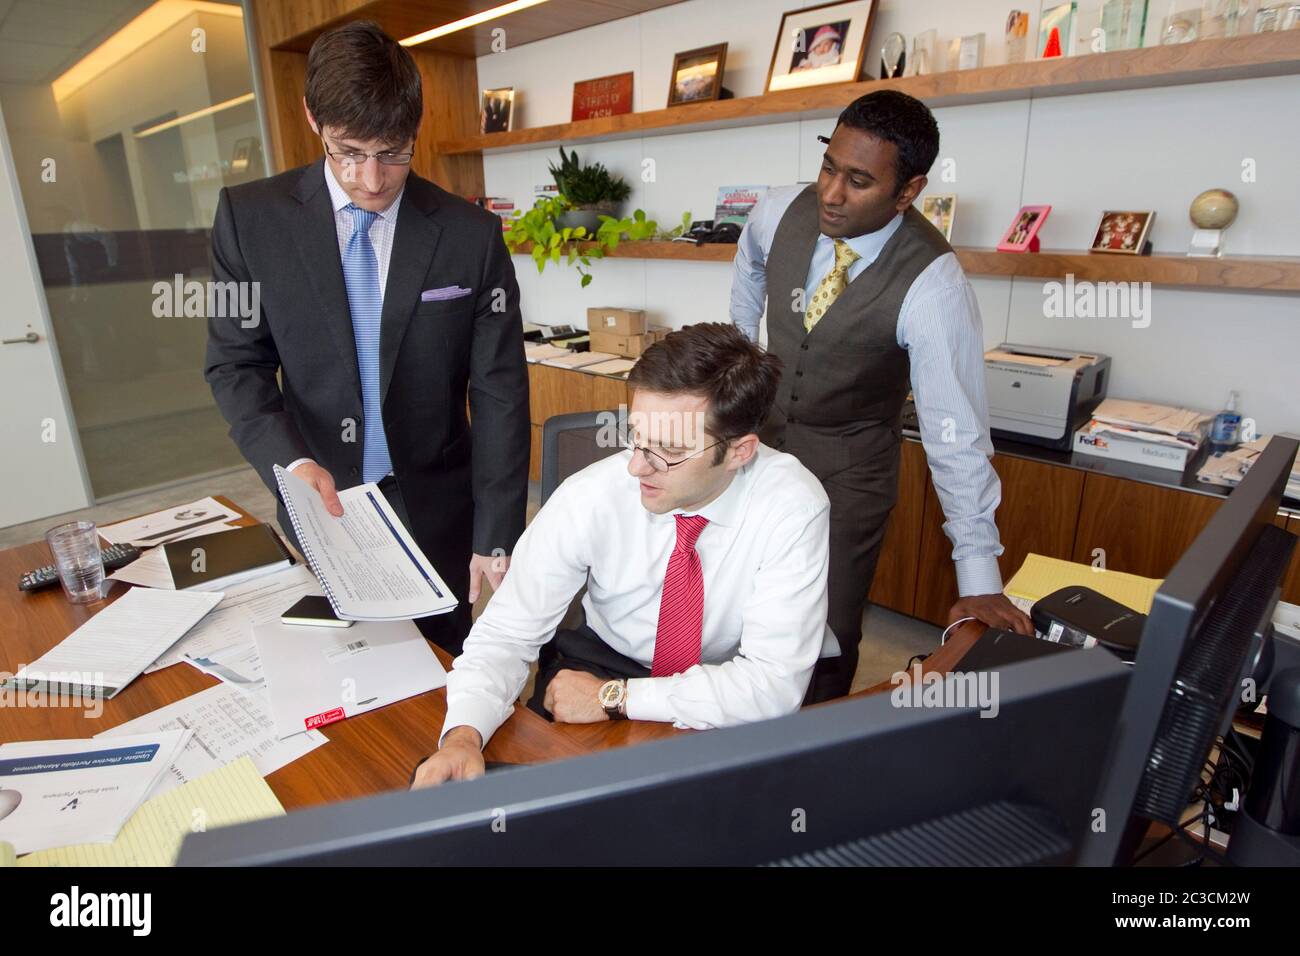 Austin Texas, USA, 2013: Gut gekleidete junge Geschäftsleute arbeiten zusammen an einem Projekt im Büro. ©Marjorie Kamys Cotera/Daemmrich Photography Stockfoto